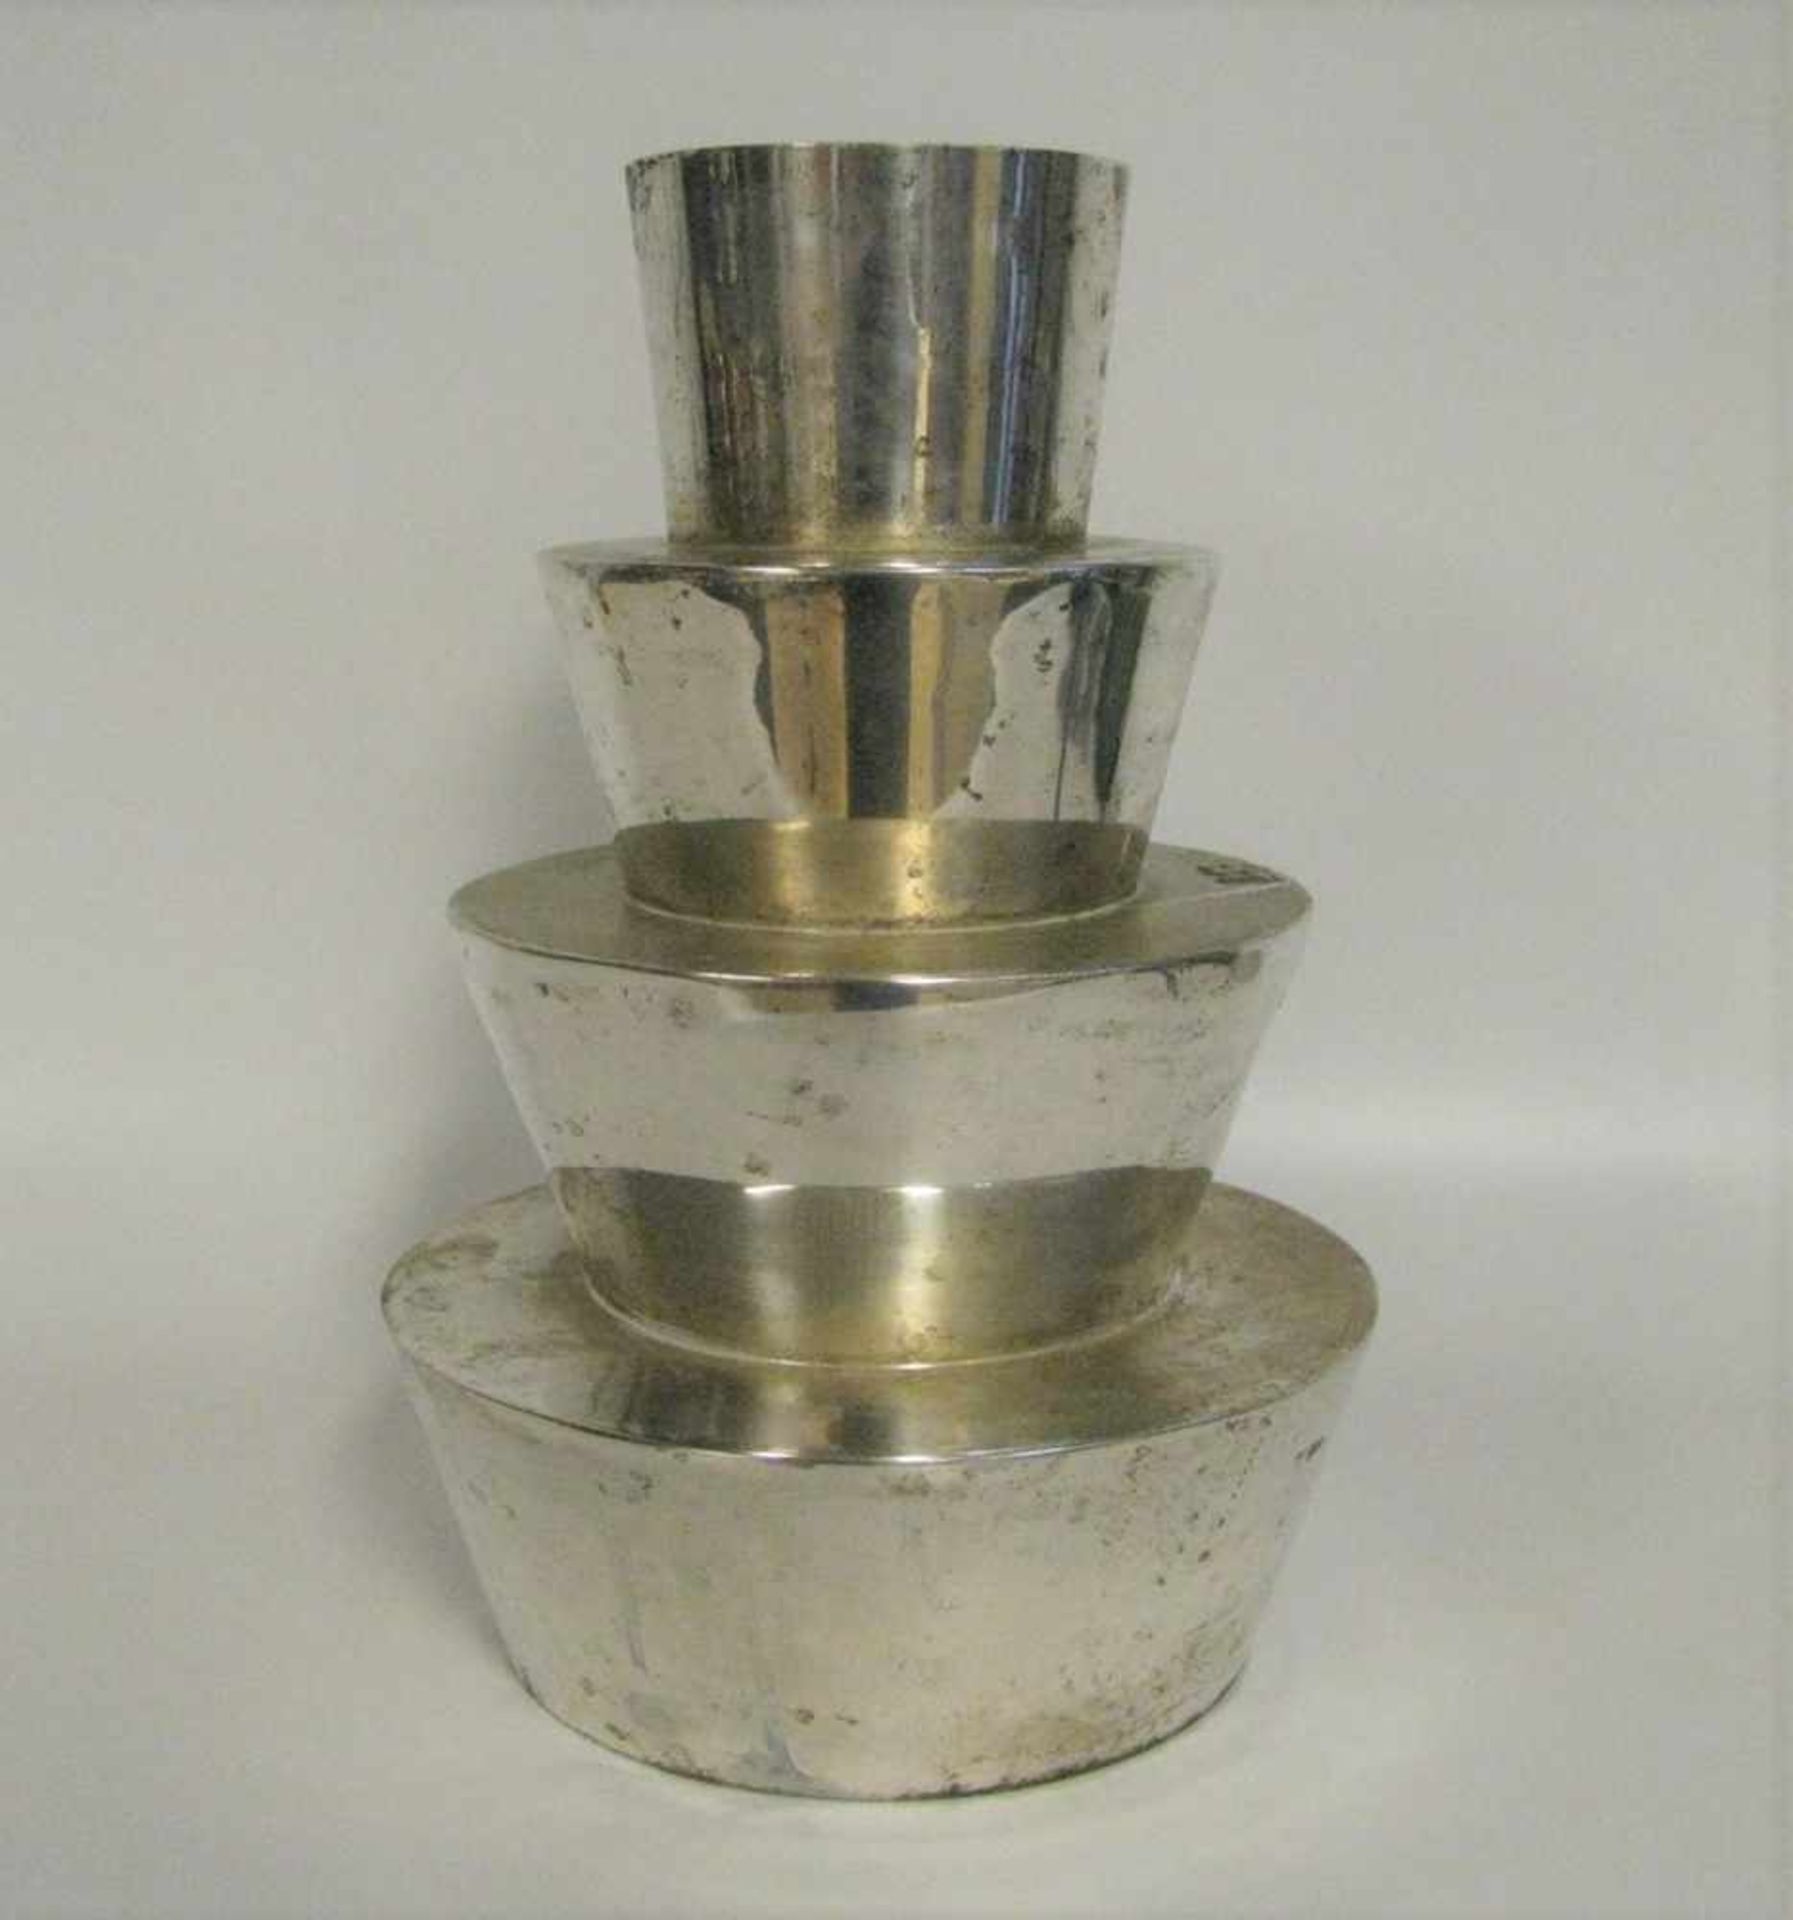 Designer-Vase, Messing versilbert, h 31 cm, d 22 cm.- - -19.00 % buyer's premium on the hammer